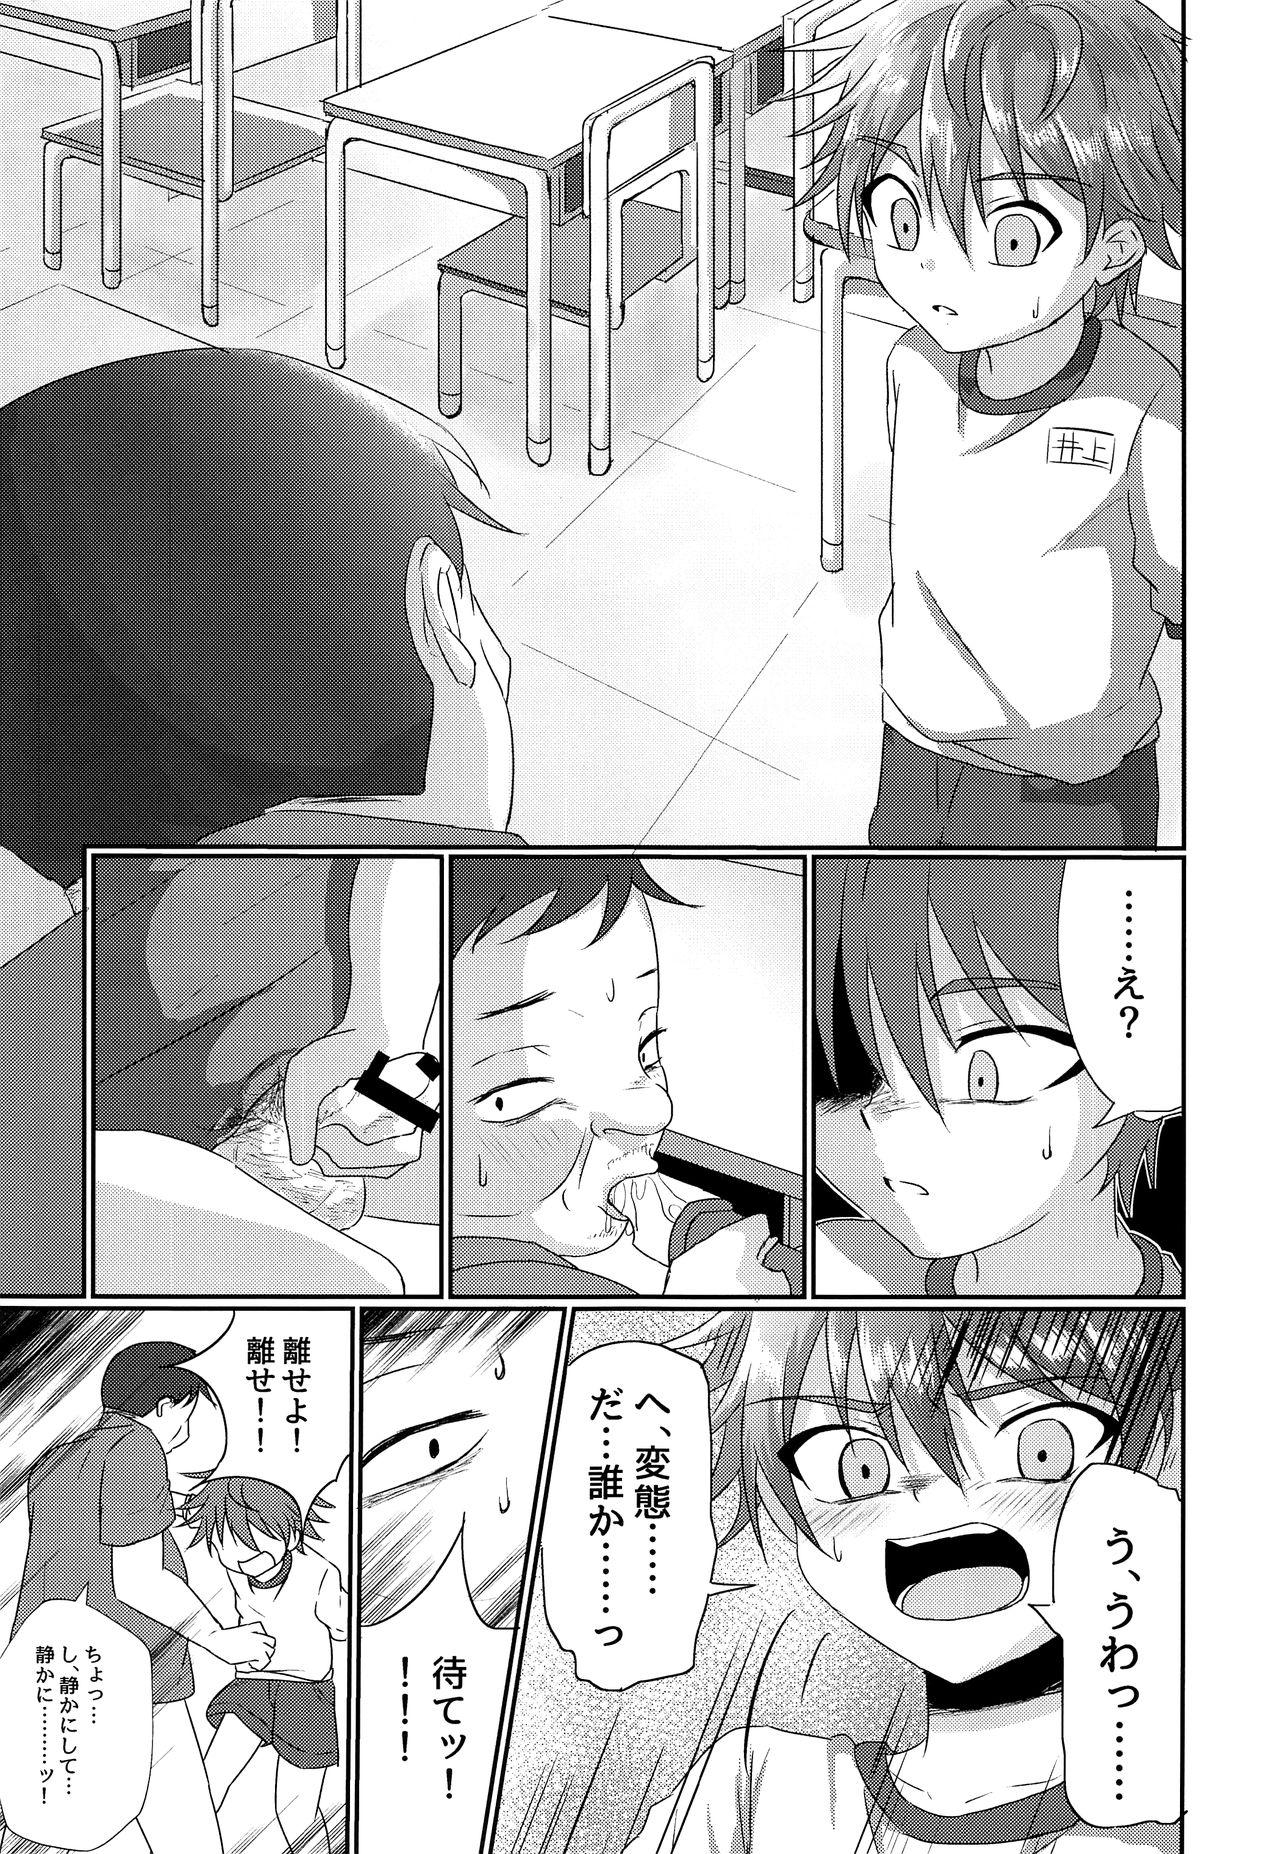 Chunky Kimi kara egao o ubatte gomen - Original Rubbing - Page 8